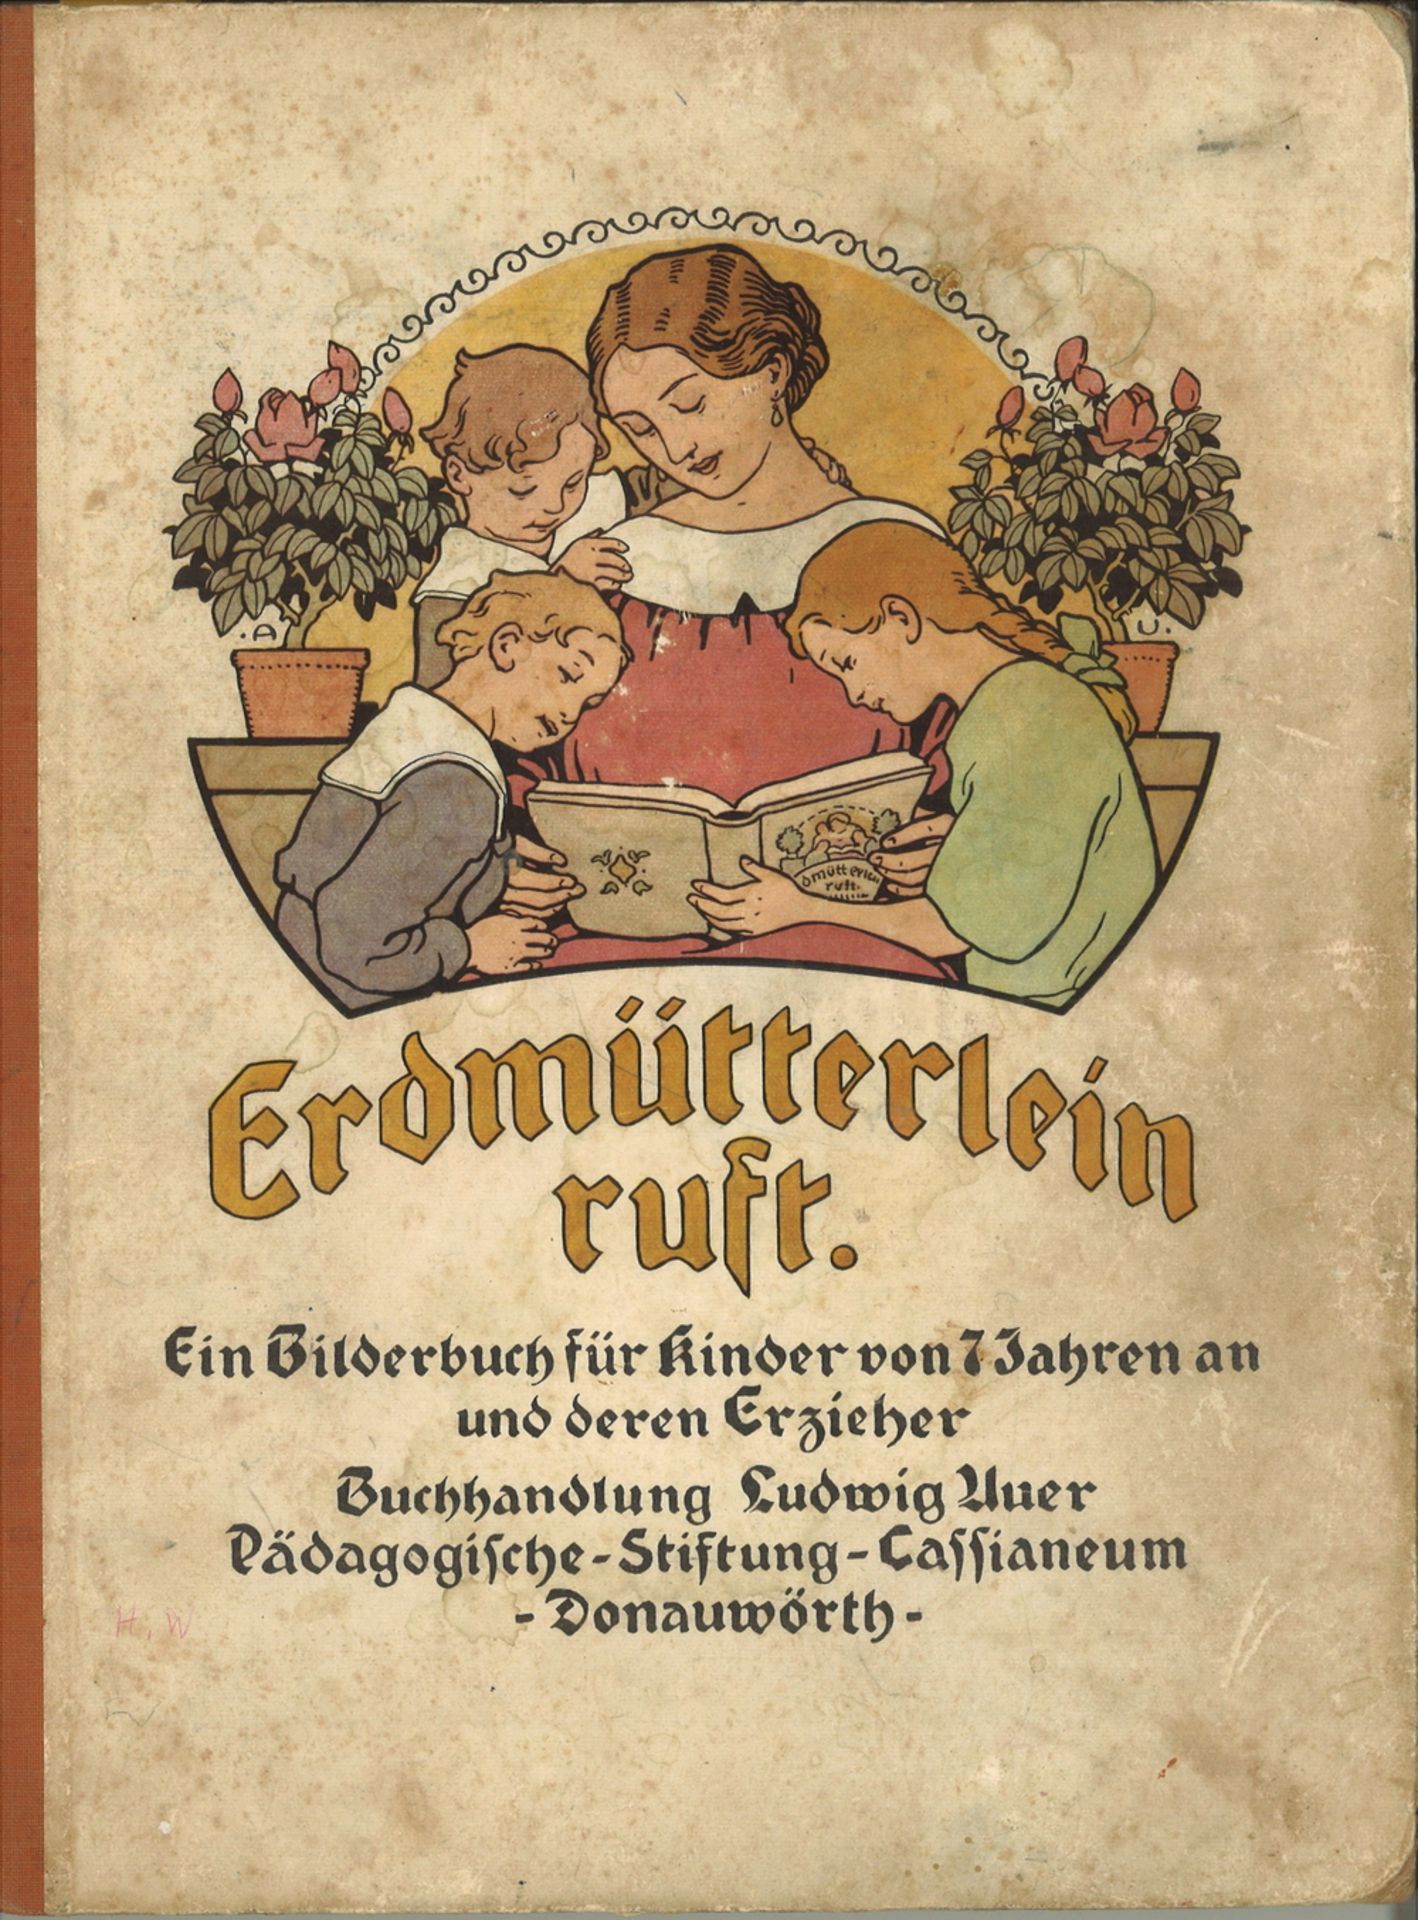 Erdmütterlein ruft. Ein Bilderbuch für Kinder von 7 Jahren an und deren Erzieher. Buchhandlung